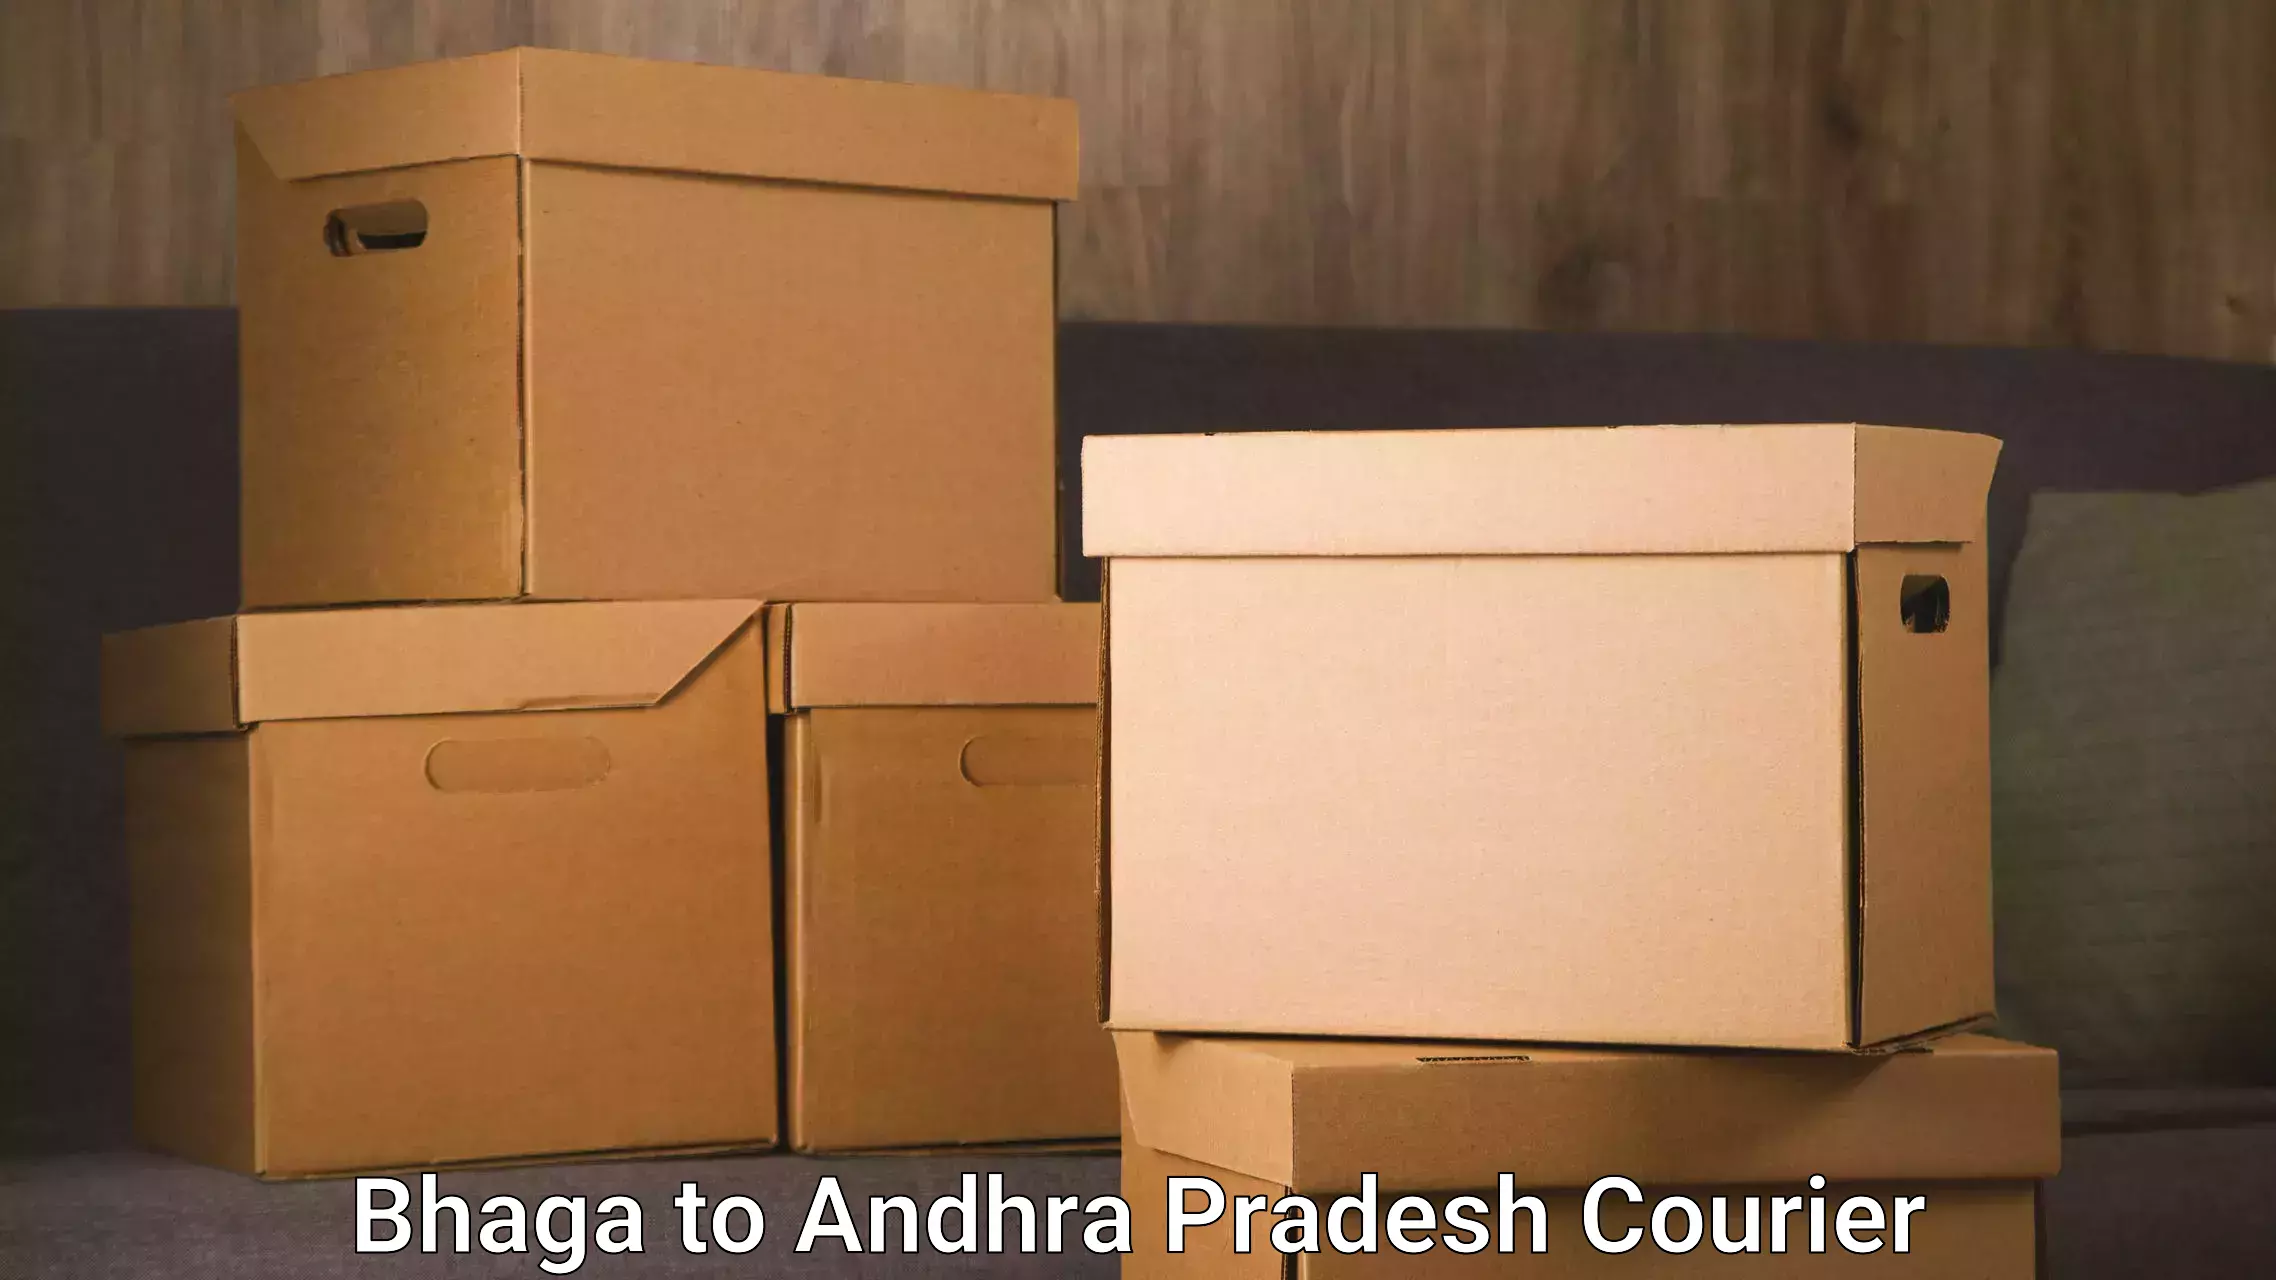 Multi-national courier services Bhaga to Madakasira